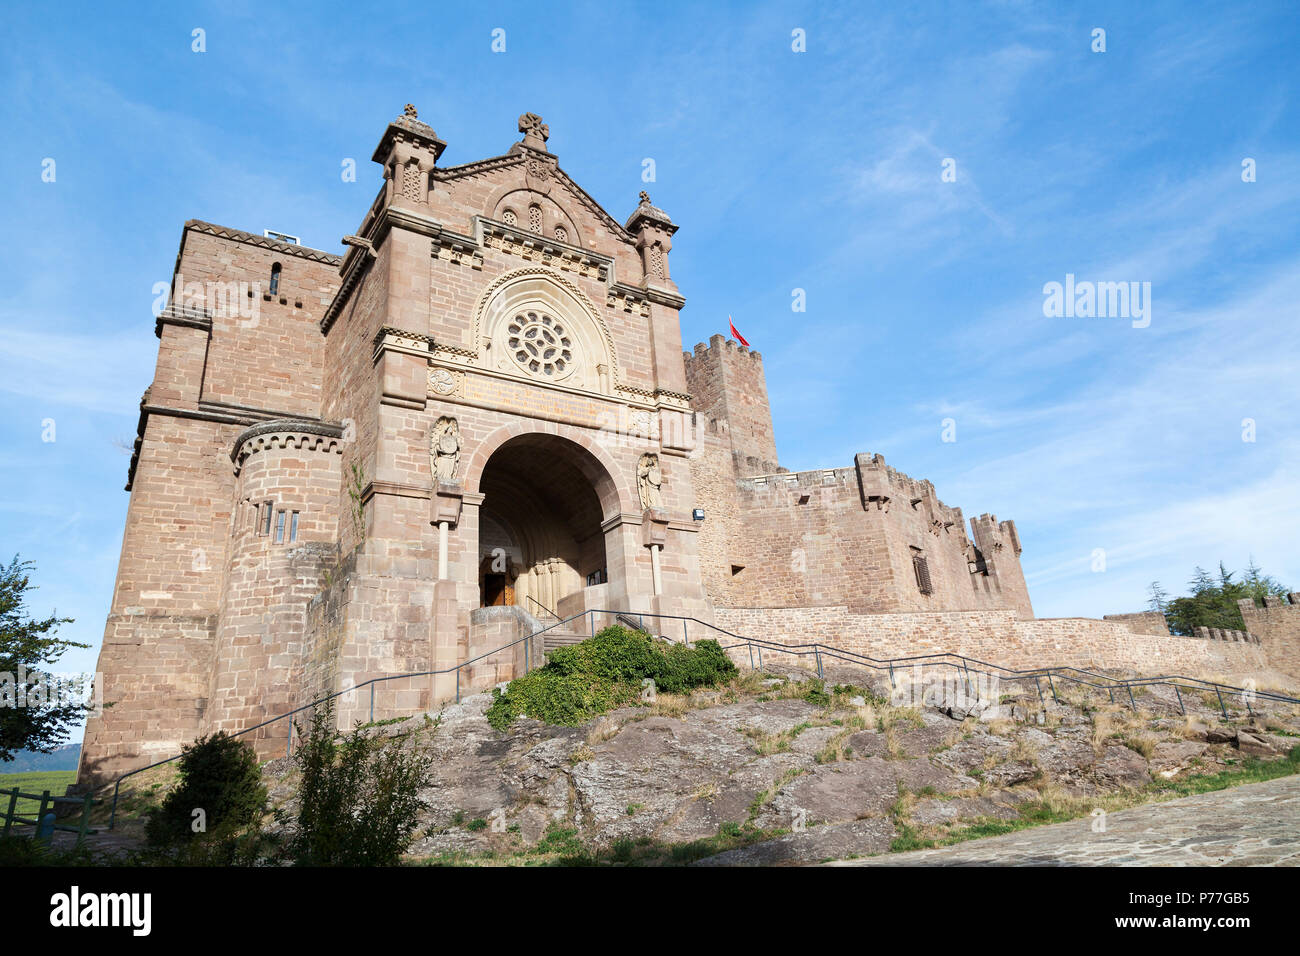 España, Javier, la basílica y el Castillo de Javier (Castillo de Javier). Construido en el siglo 10 y famoso por ser el lugar de nacimiento de Francisco Xavi Foto de stock